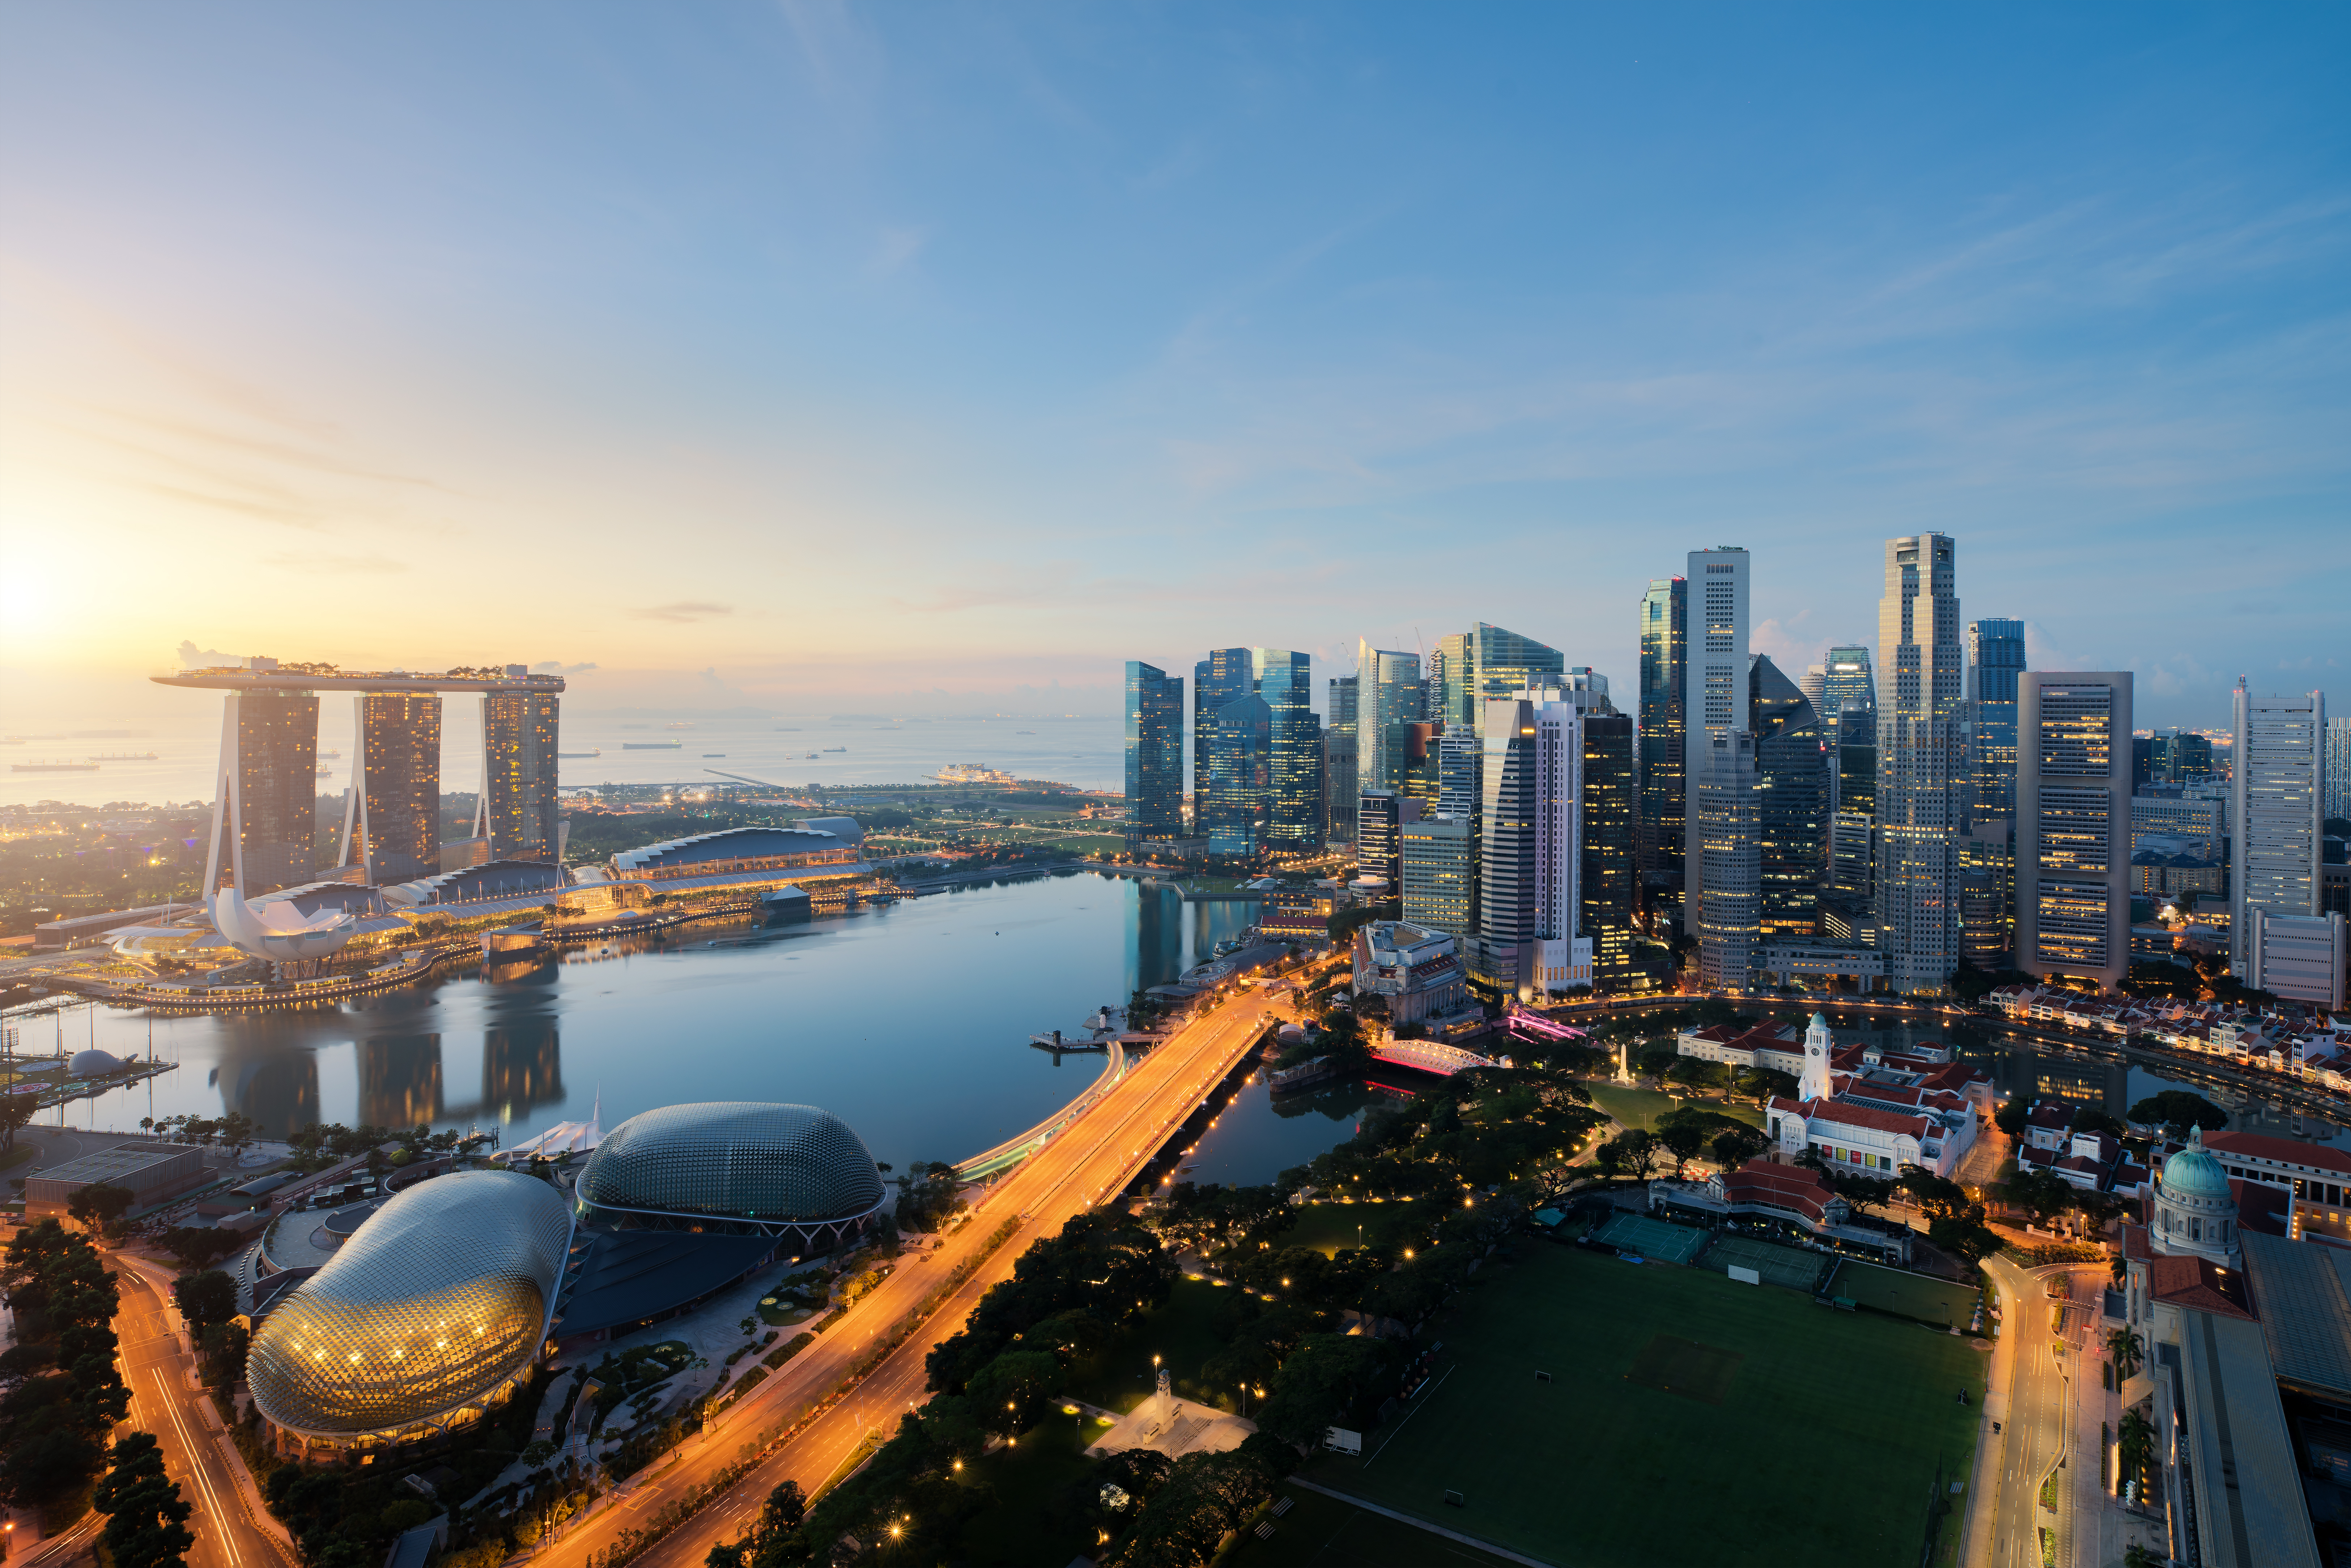 PLL LOT - nowe połączenie do Singapuru, rozkład, ceny biletów